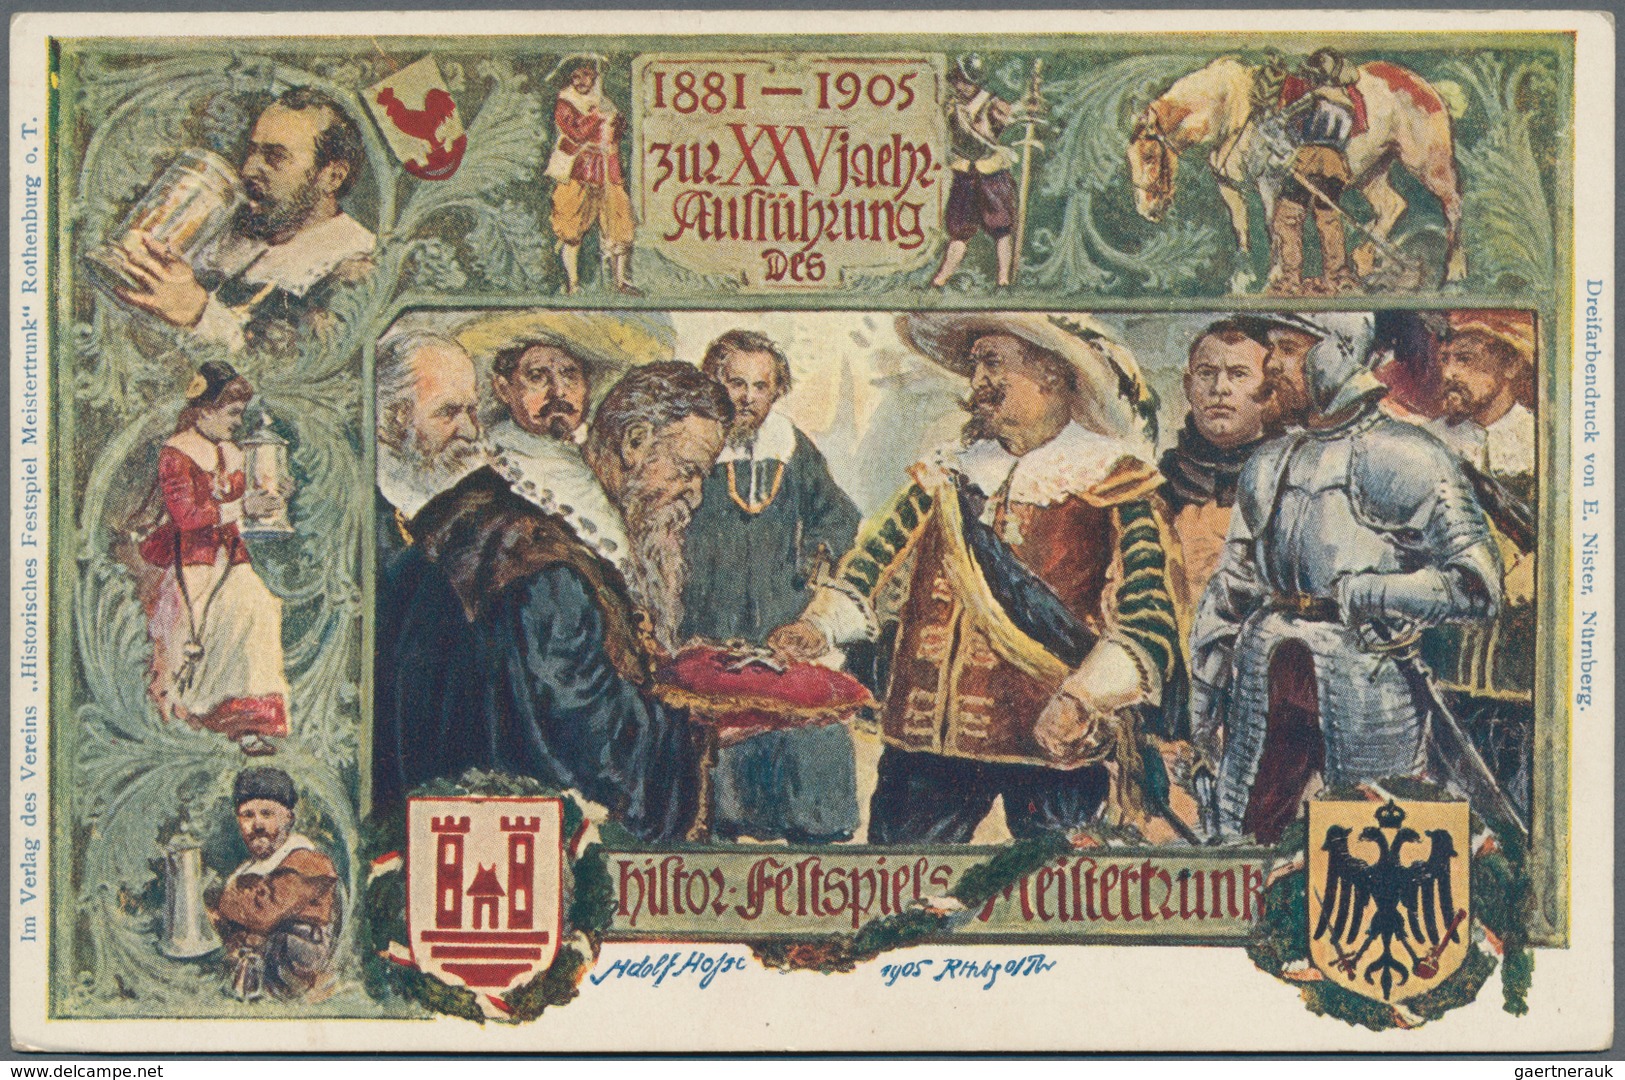 Deutschland: 1618/1950 ca., sehr gehaltvoller Posten mit über 200 Belegen, dabei Vorphilatelie mit f